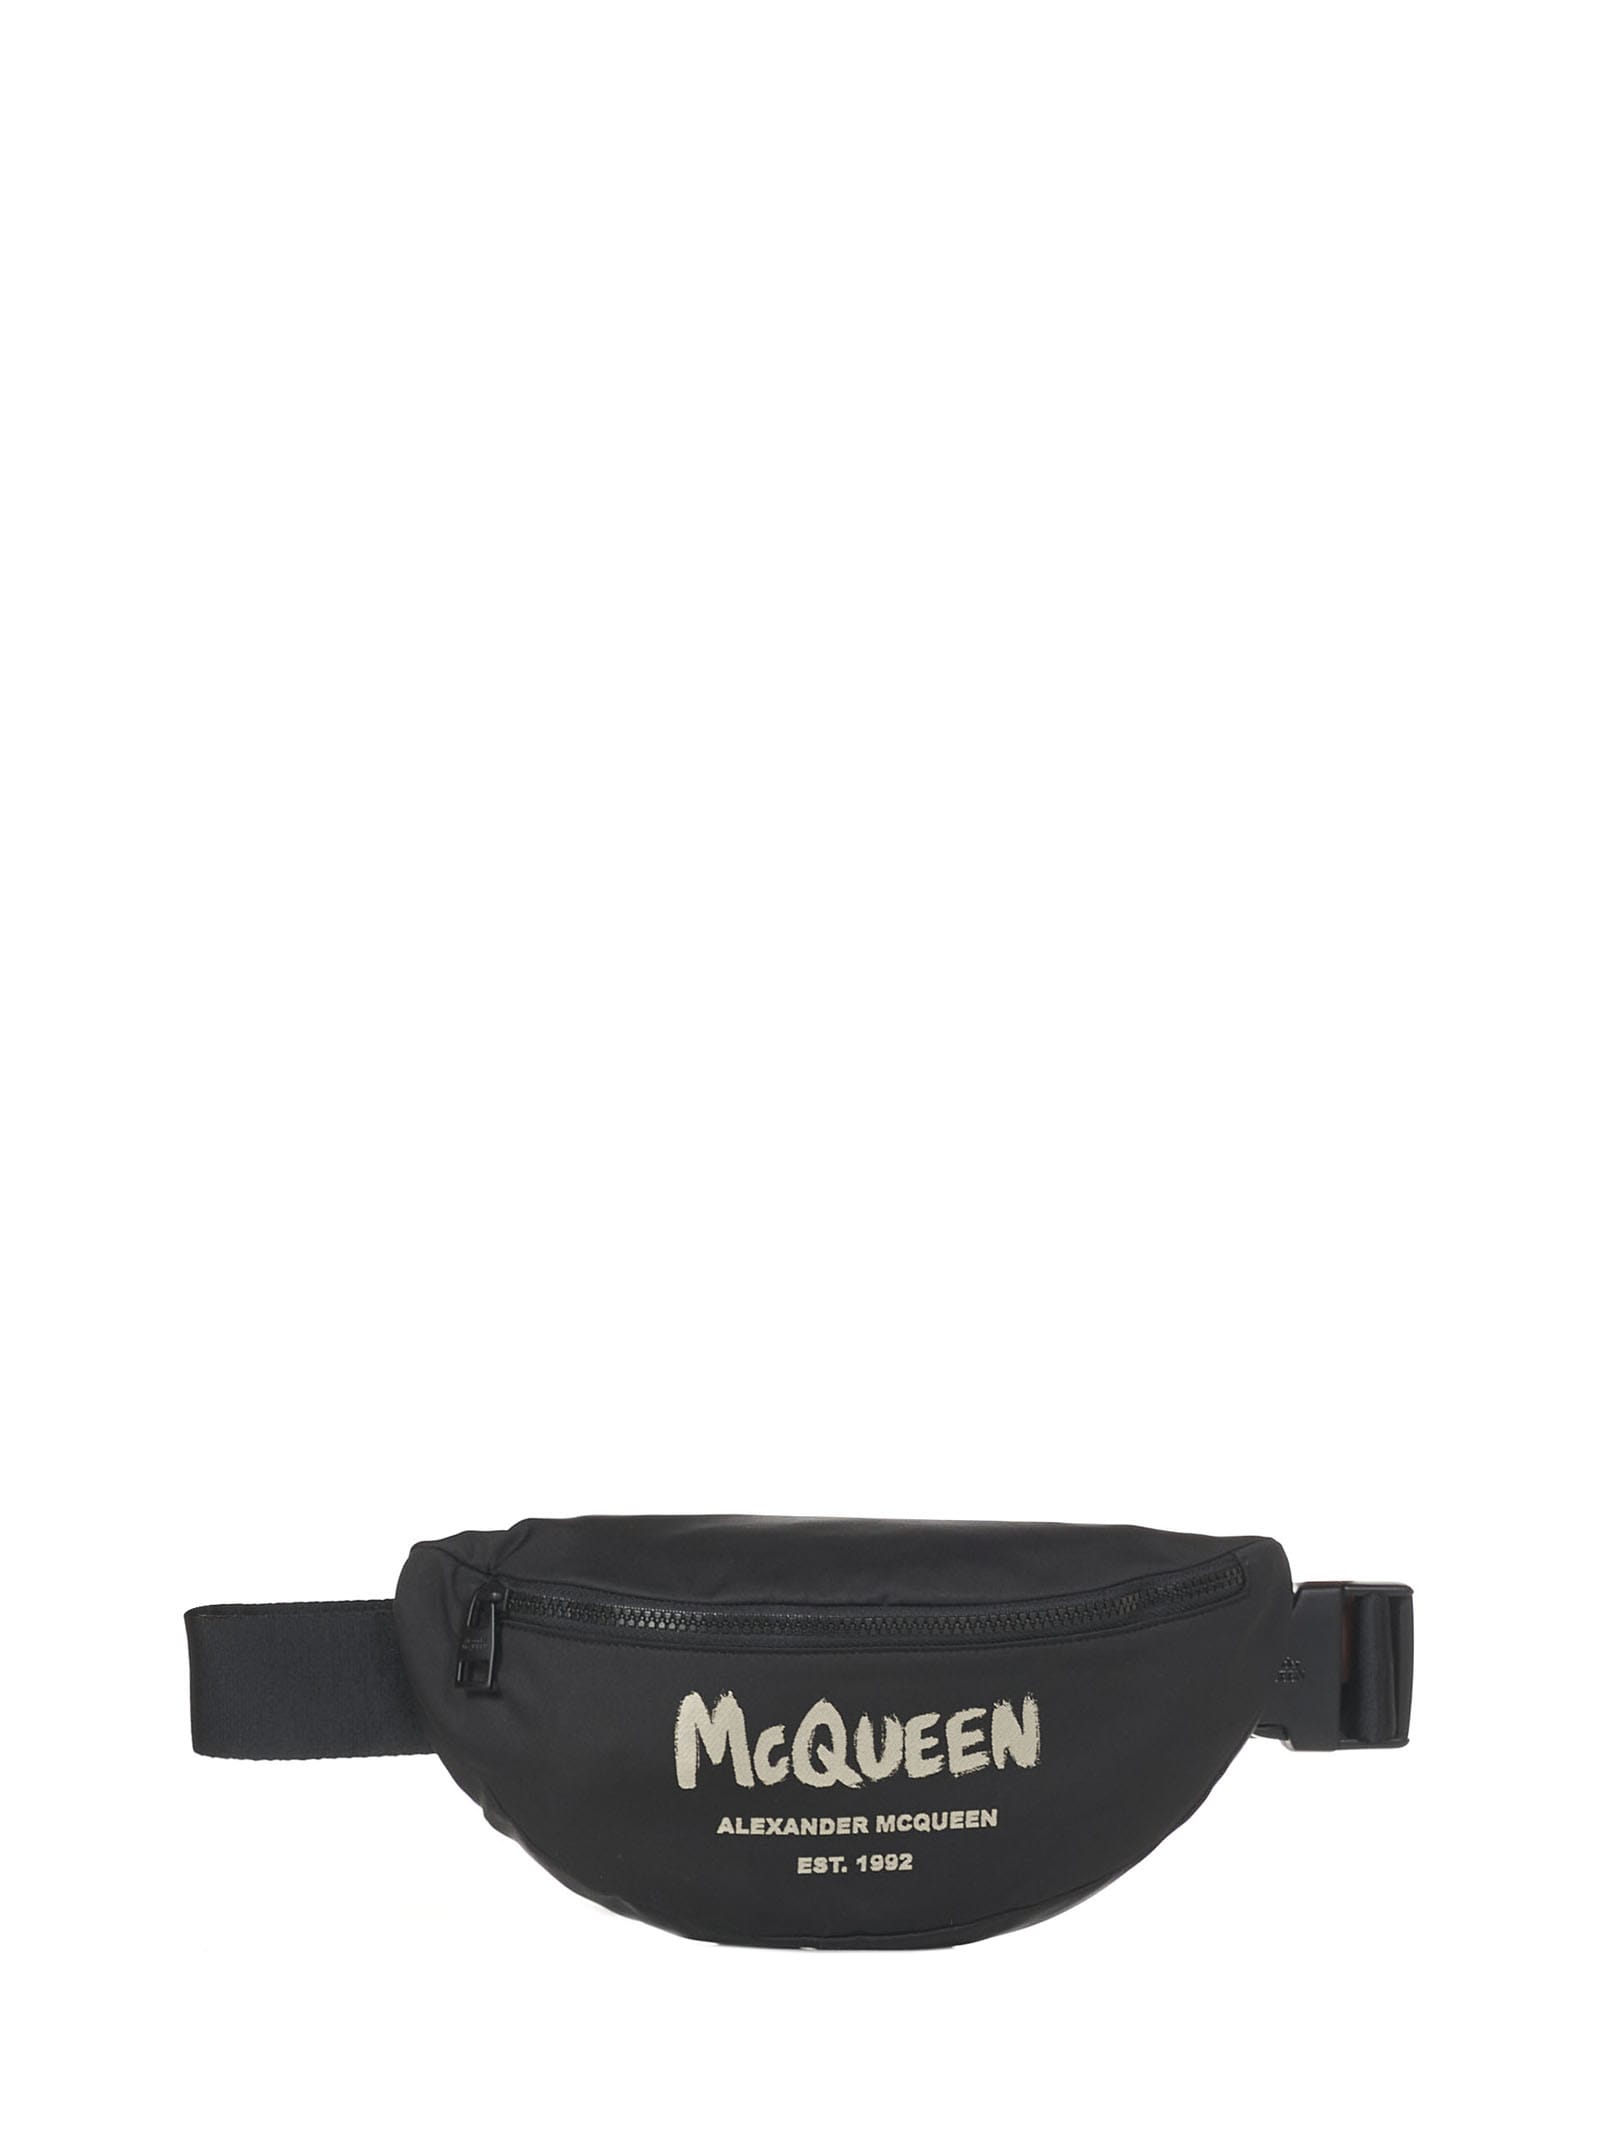 Alexander McQueen Graffiti Belt Bag